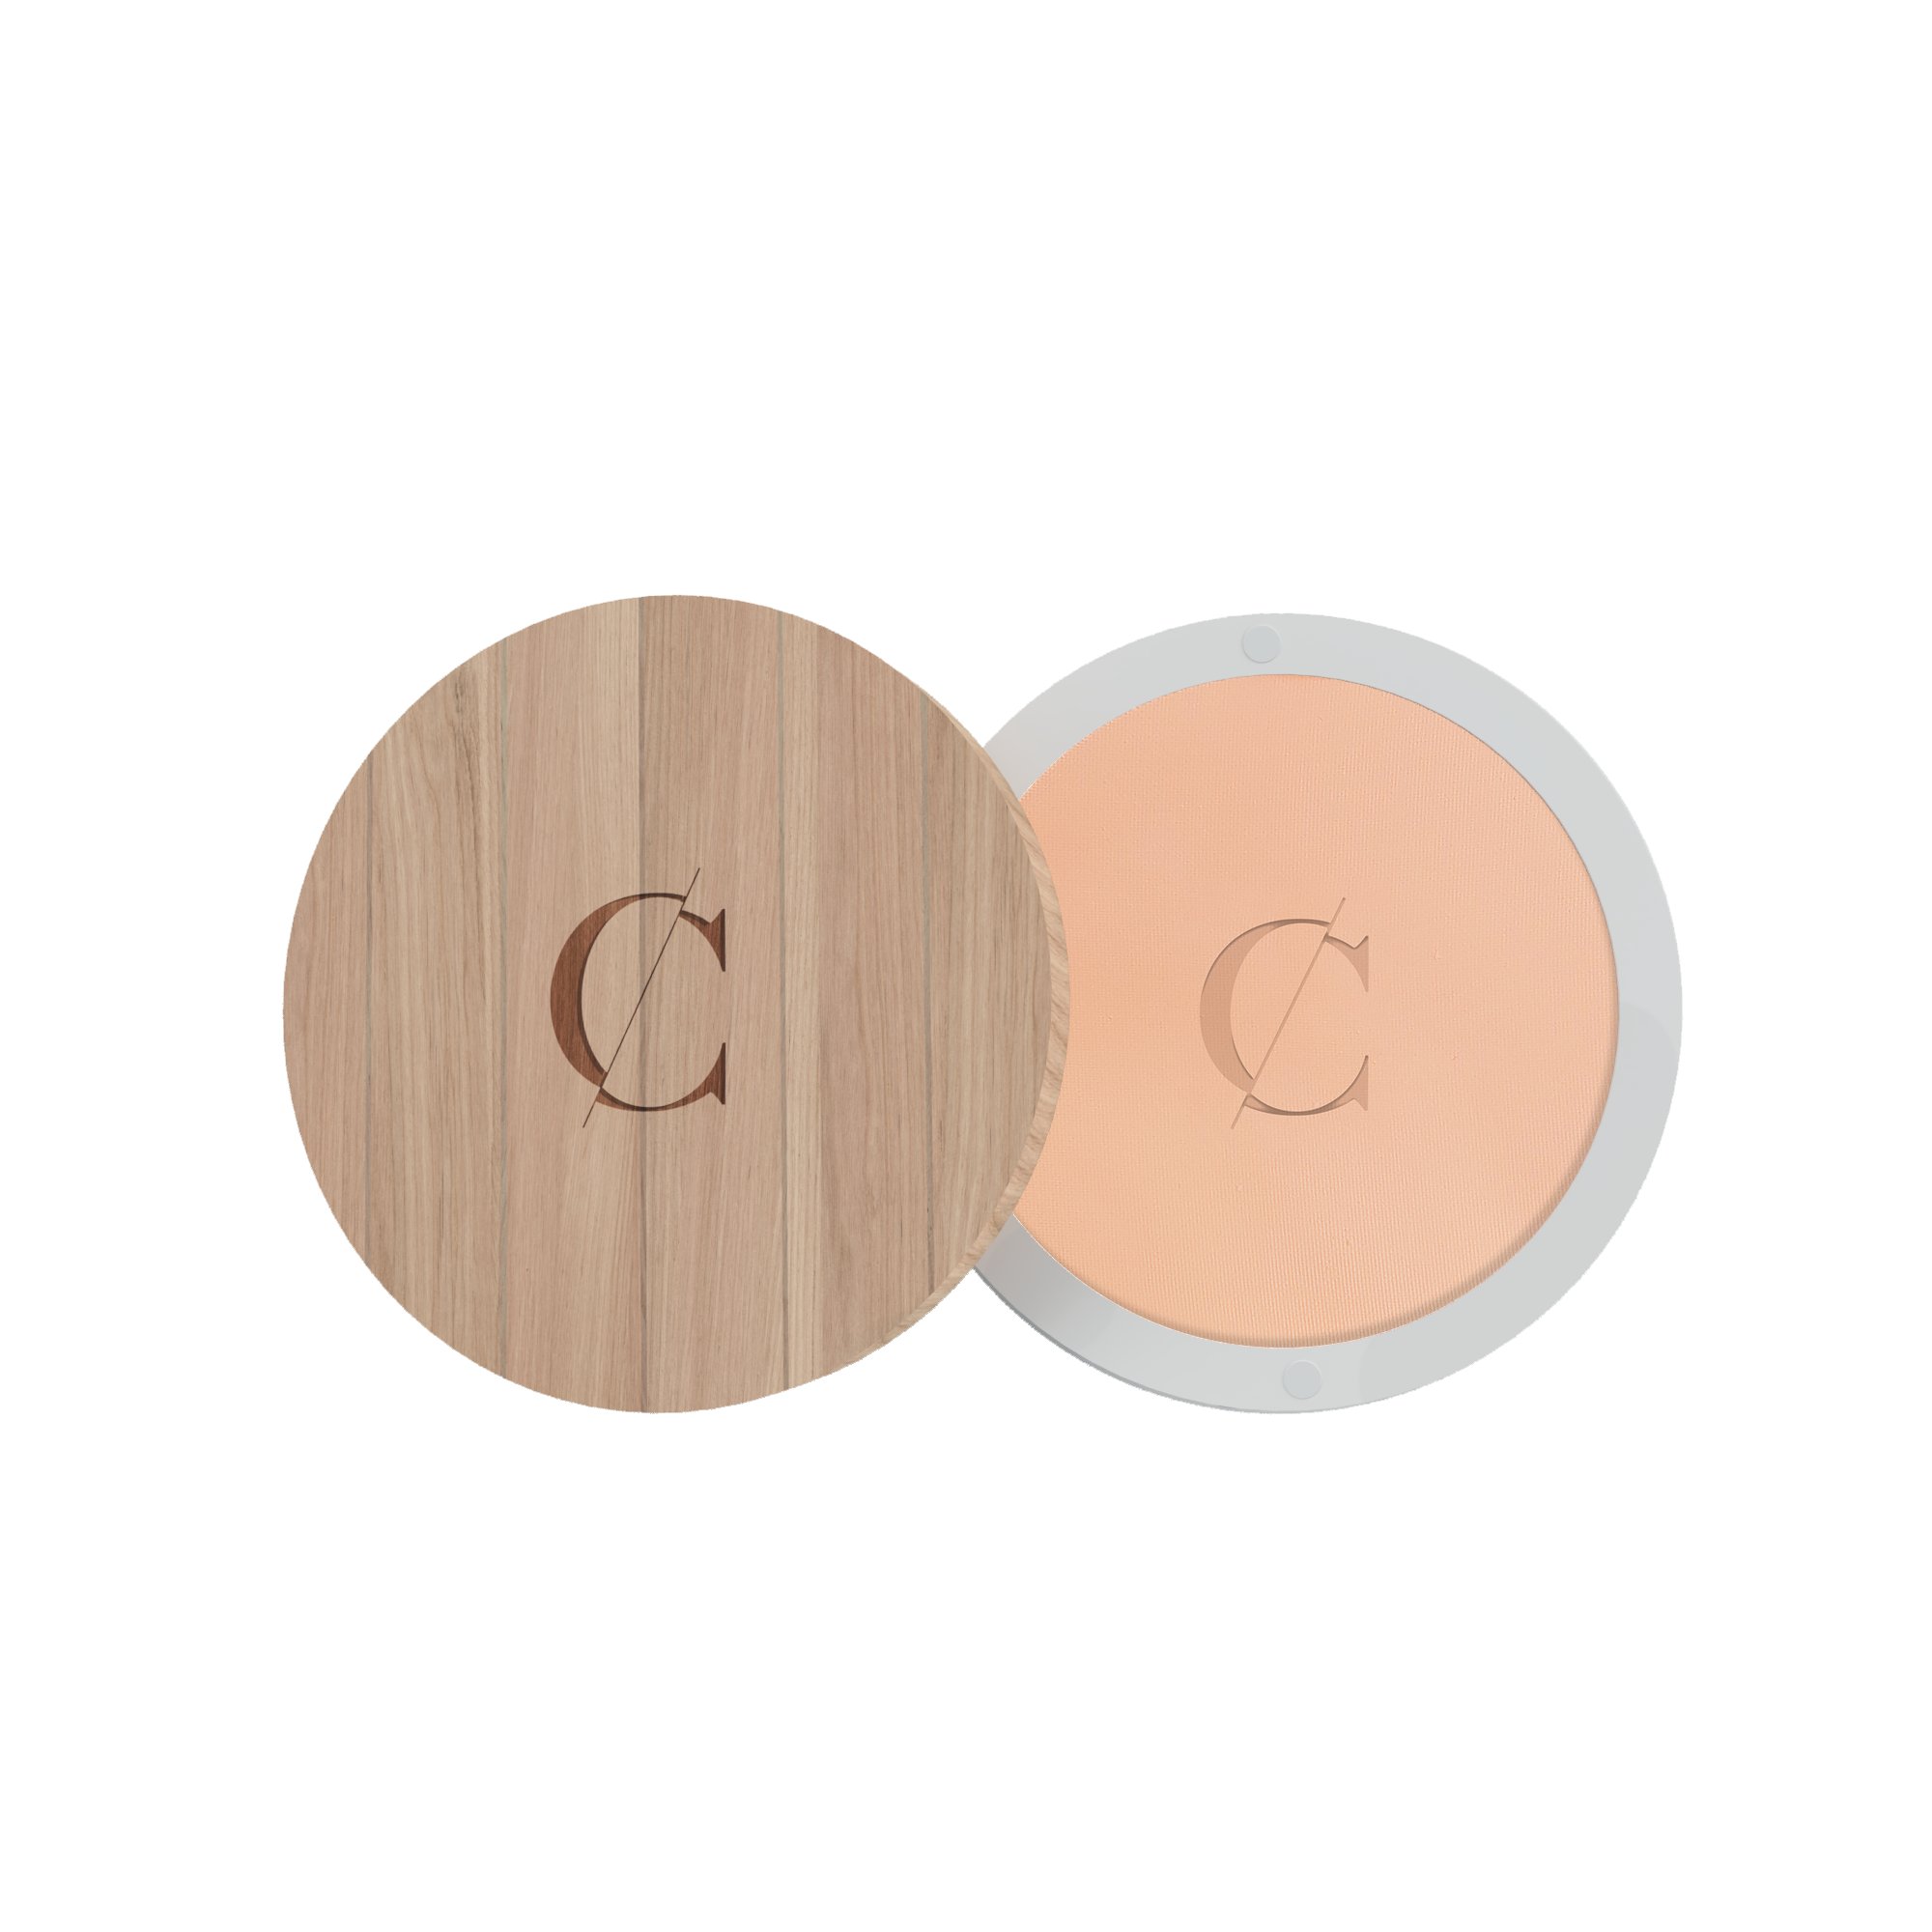 Deze natuurlijke gezichtspoeder van Couleur Caramel fixeert de teint van de huid, en deze biologische compactpowder maakt de huid mat en egaal.